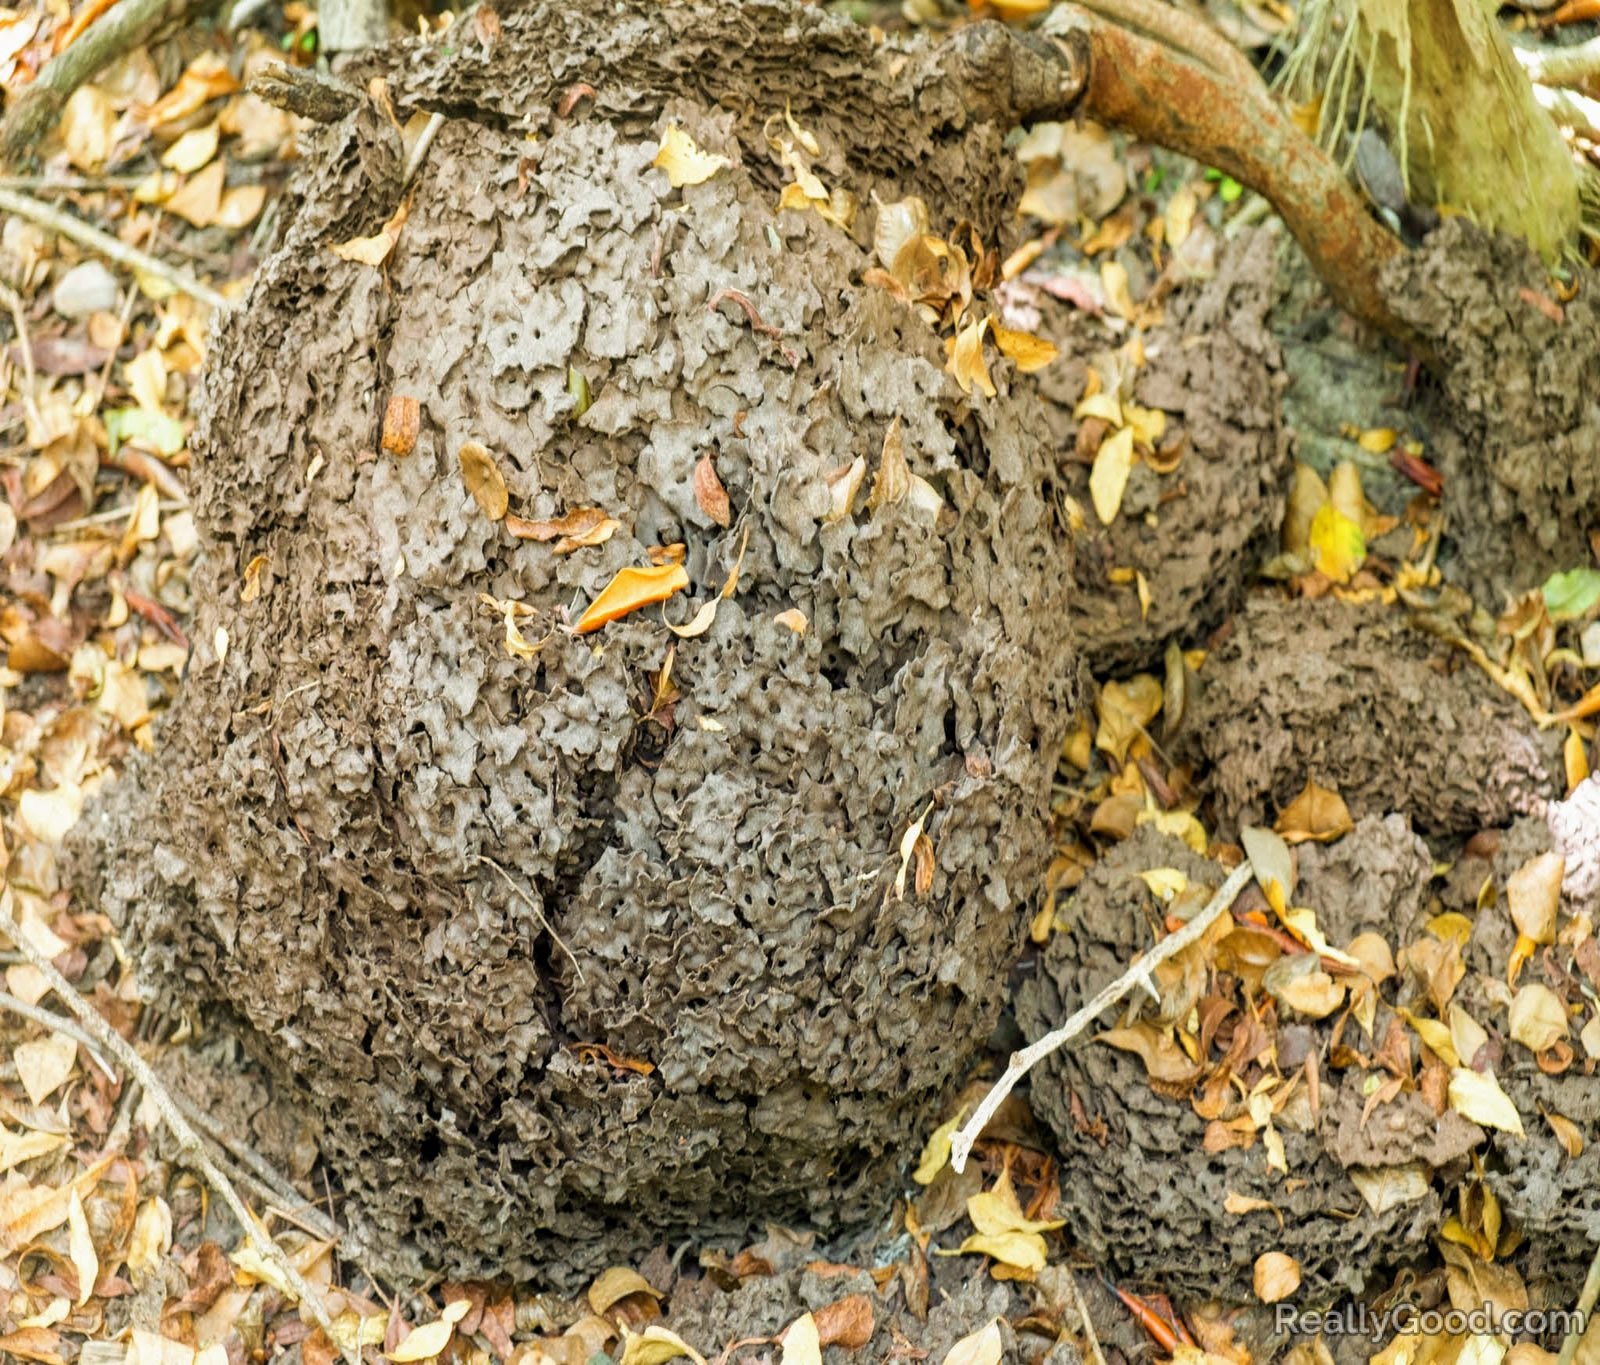 Termite nest